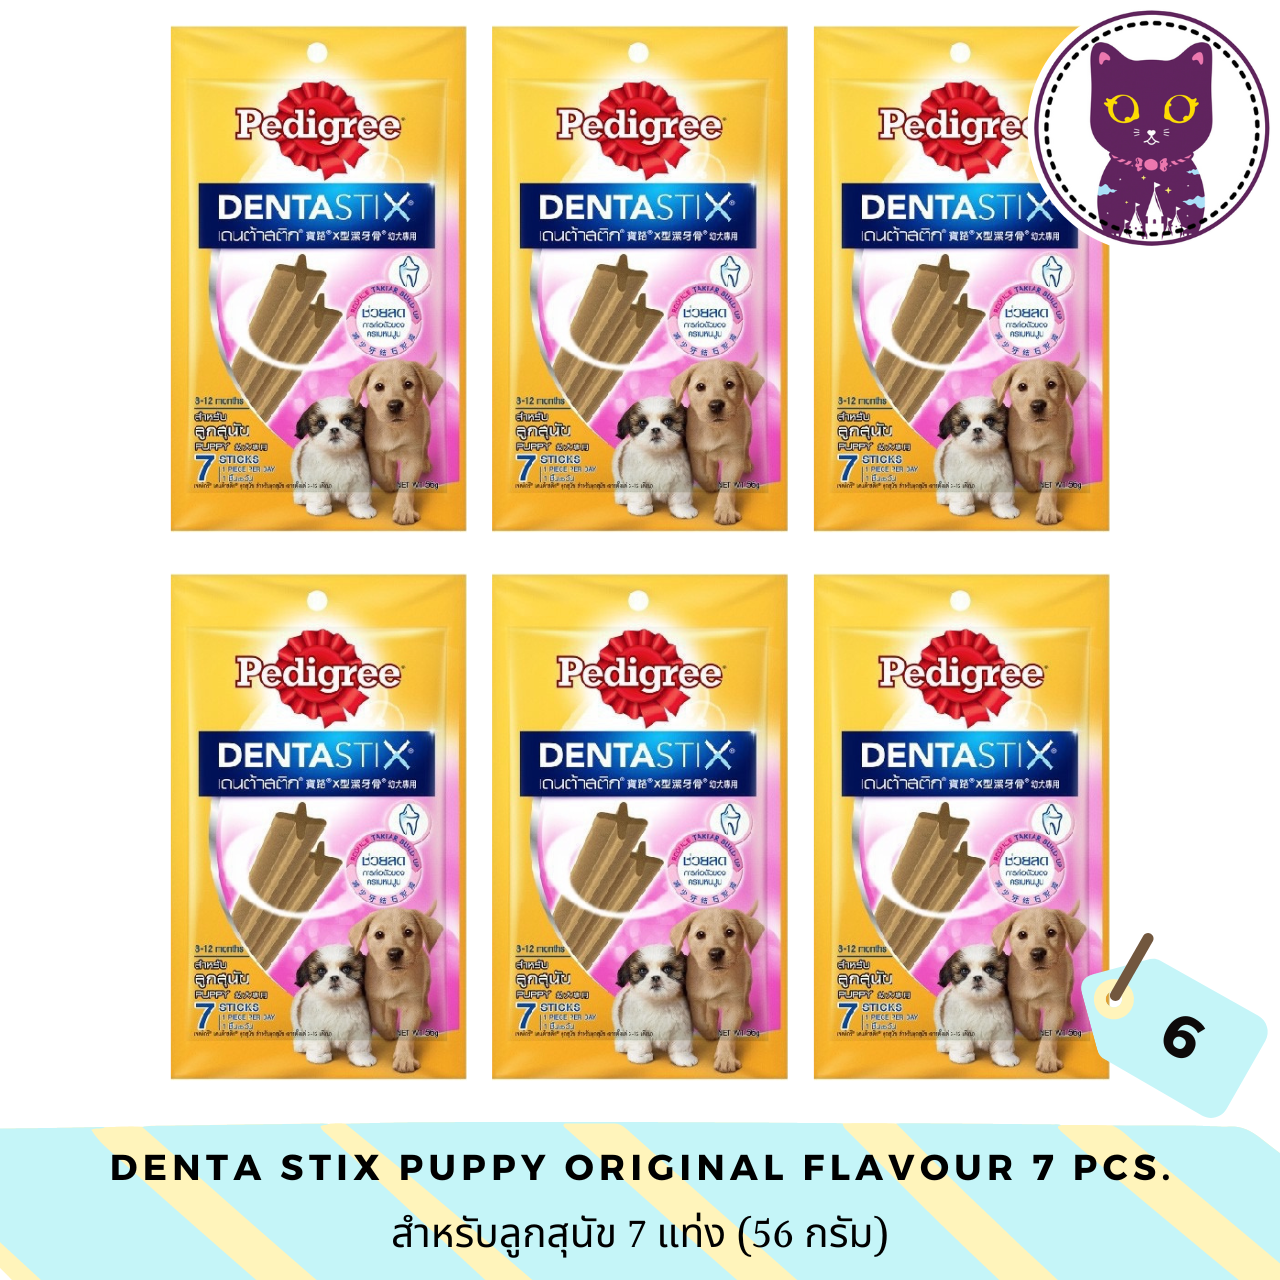 ภาพประกอบคำอธิบาย [WSP] Pedigree Denta Stix Original Flavor (Puppy) เพ็ดดิกรี ขนมขัดฟันสุนัขรูปตัว X สำหรับลูกสุนัข ออริจินอล 7 แท่ง